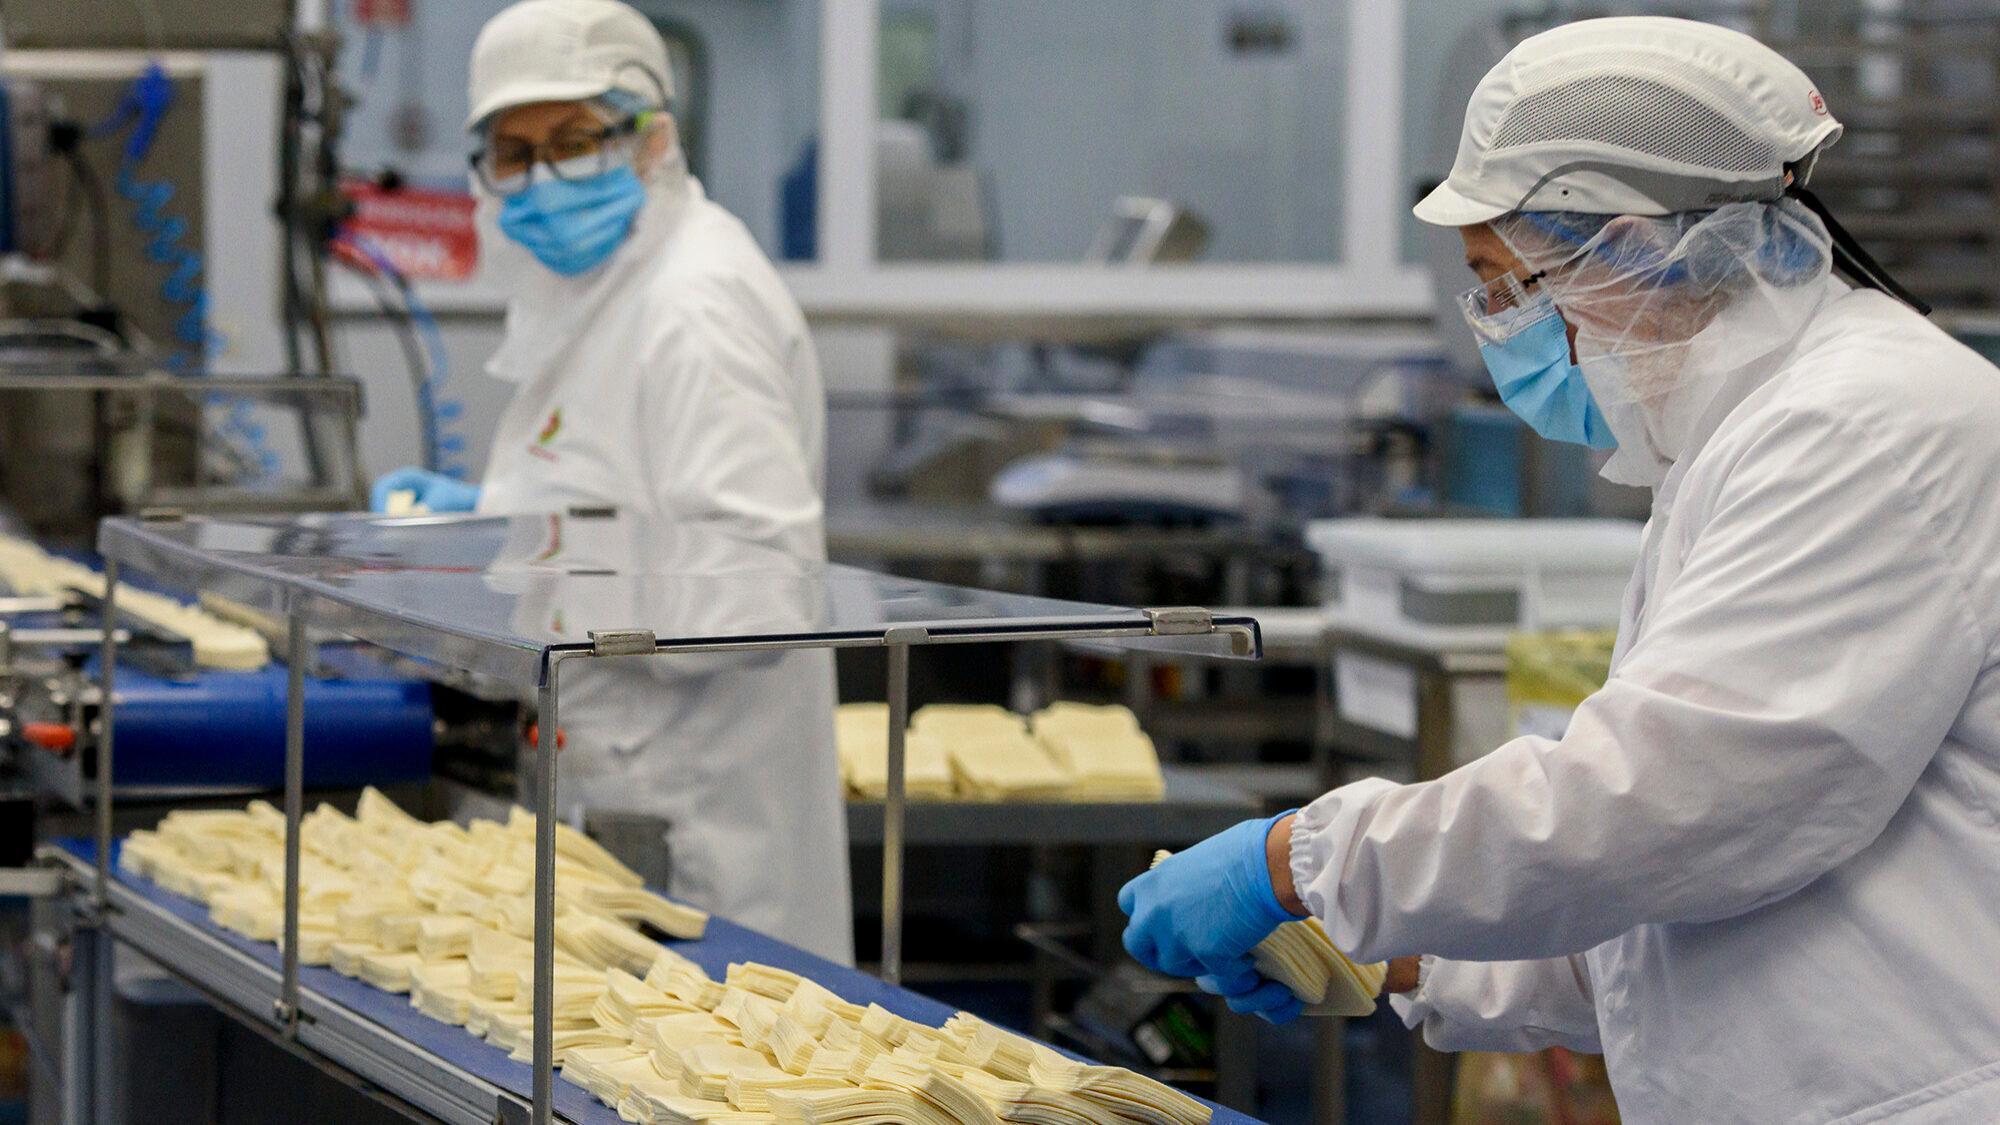 dona francesa do queijo limiano desiste de exportar terra nostra e investe oito milhões em portugal